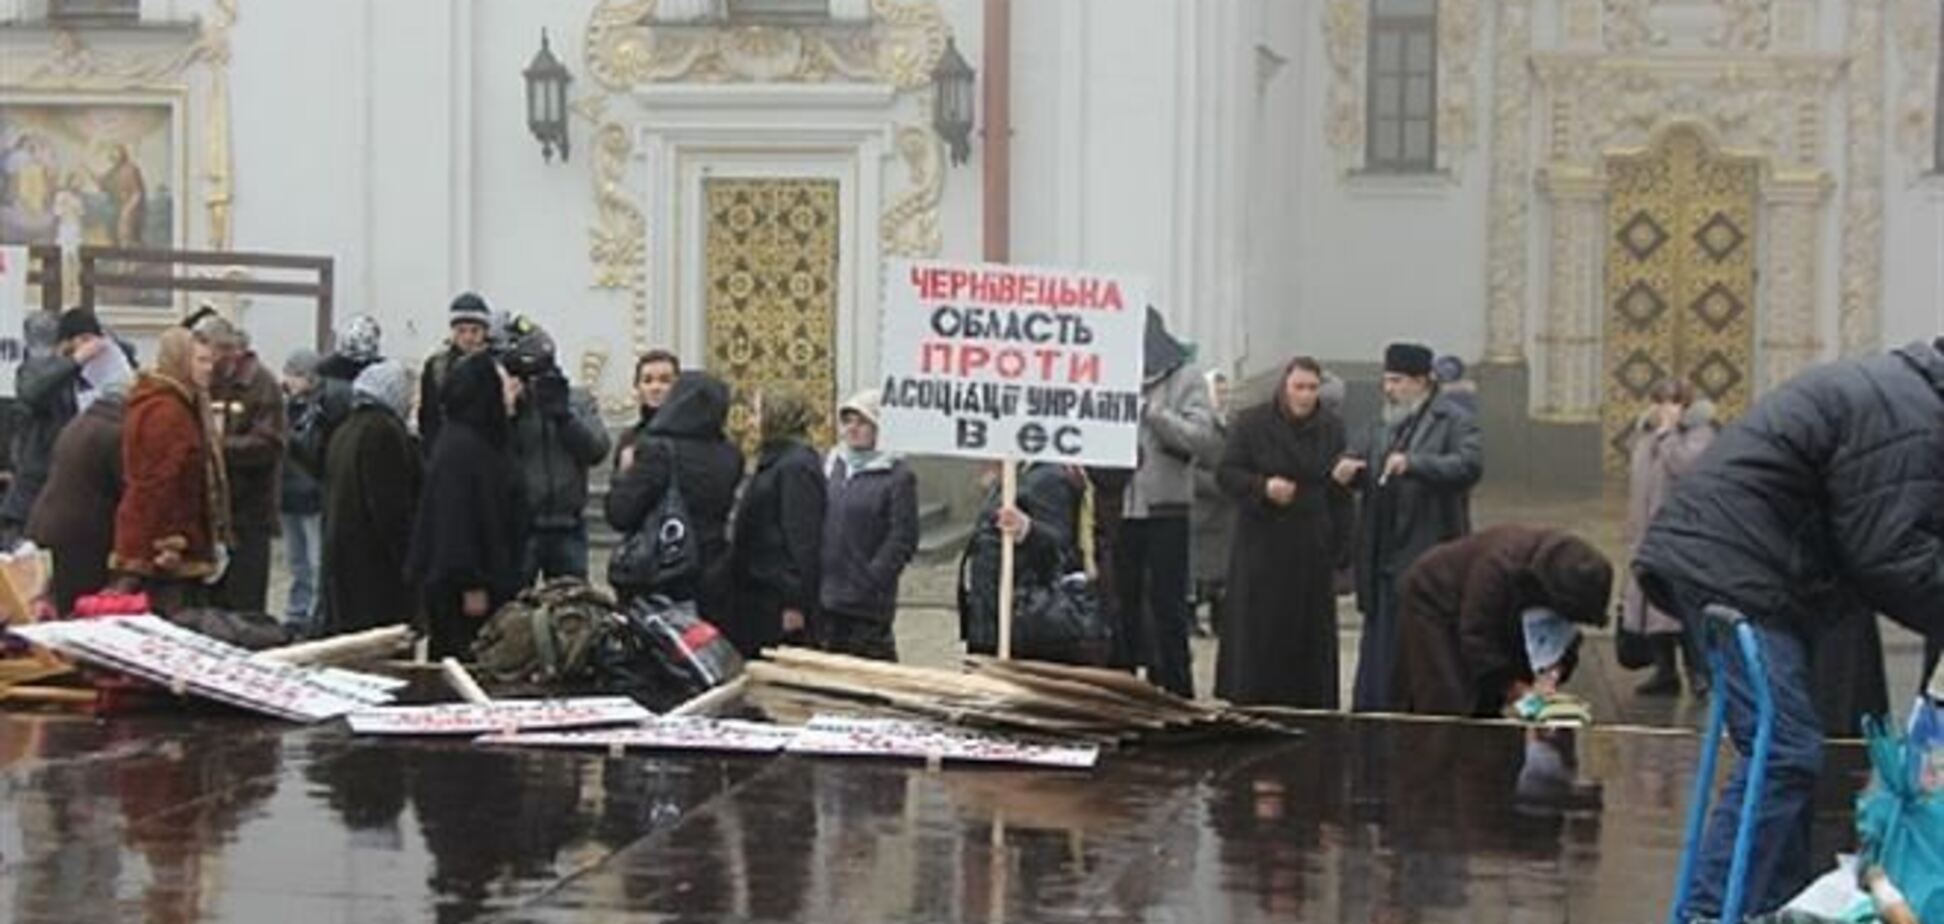 В Киево-Печерской лавре митинговали против евроинтеграции